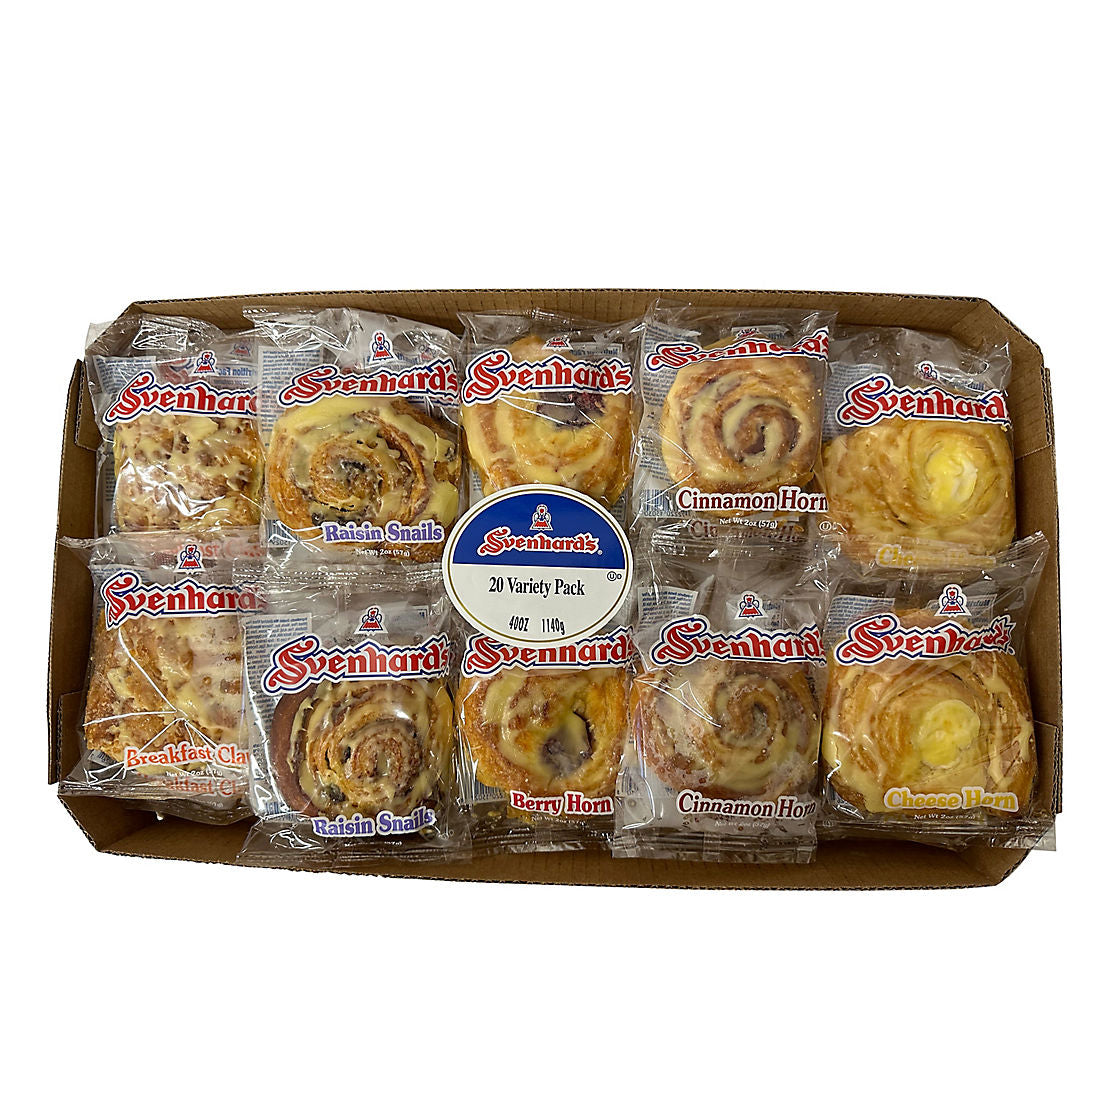 Svenhard's Scandinavian Pastries Variety Pack, 20 ct.